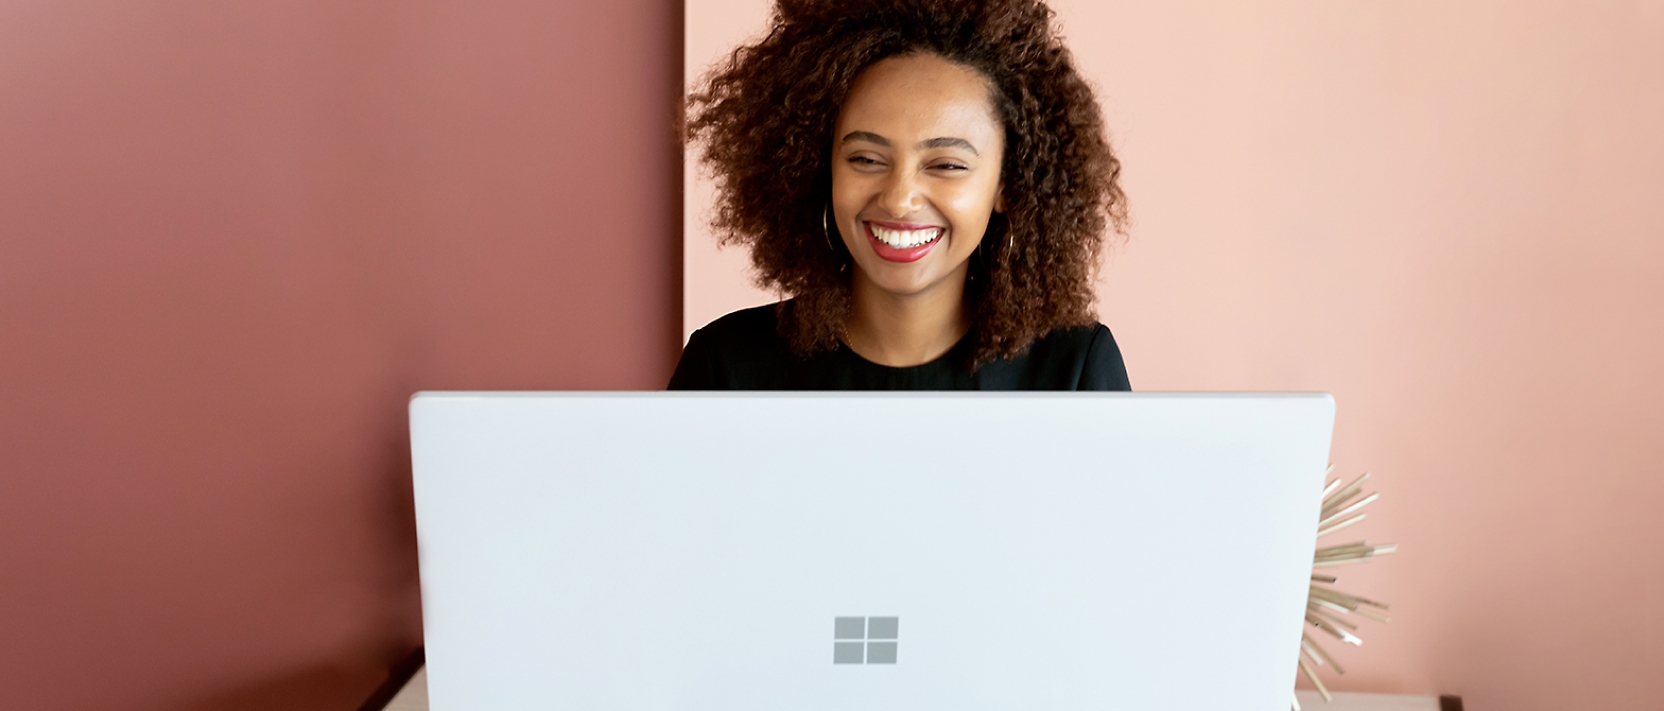 אישה מחייכת כשהיא עובדת במחשב נישא.